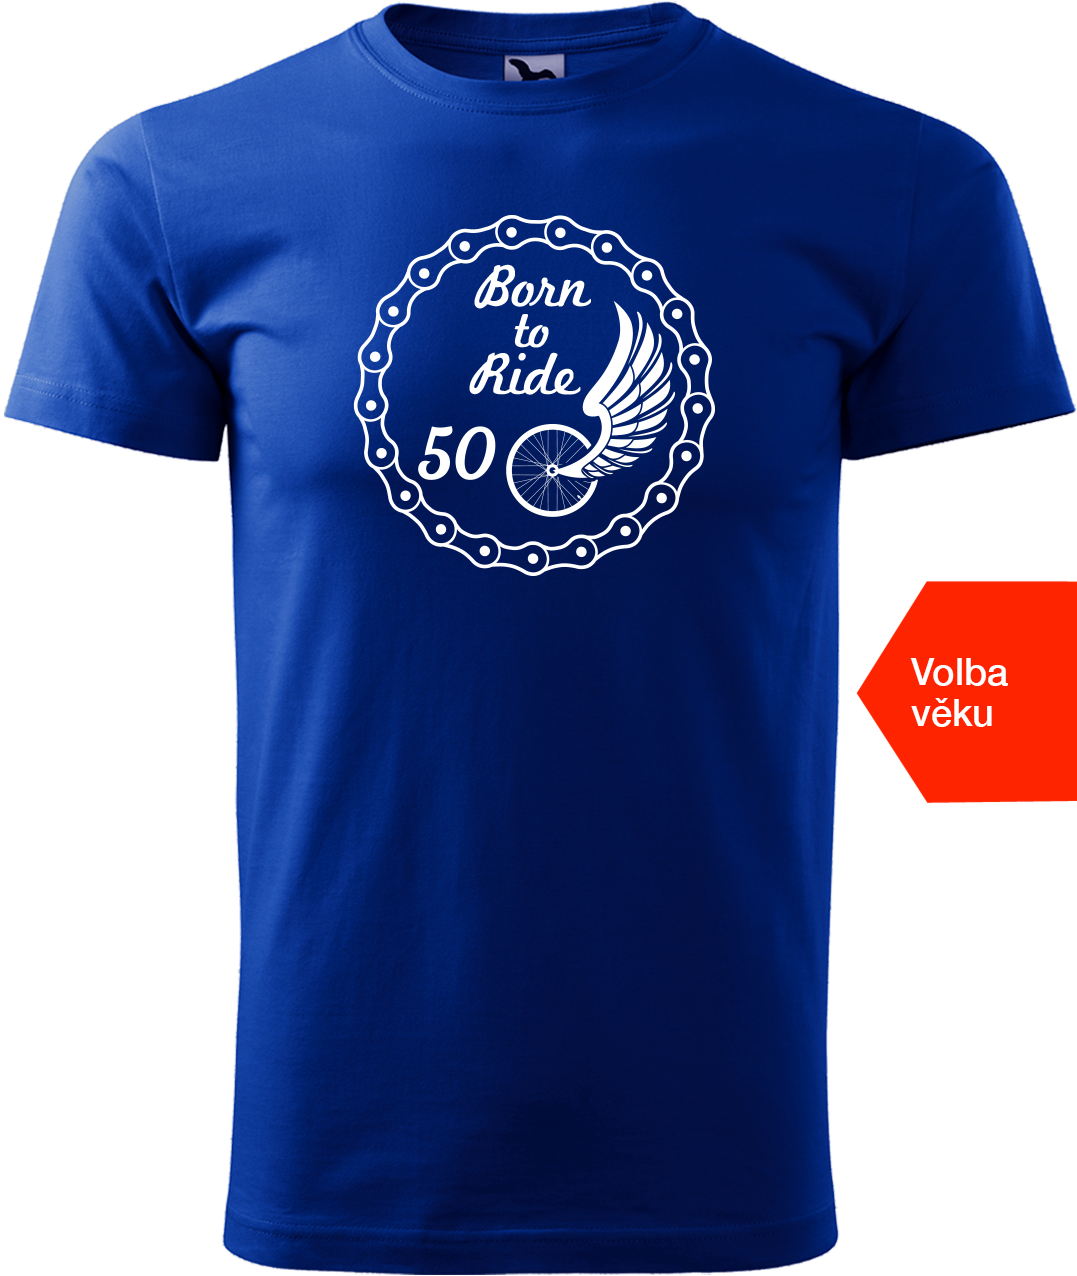 Pánské tričko pro cyklistu s věkem - Born to Ride (wings) Velikost: XL, Barva: Královská modrá (05)